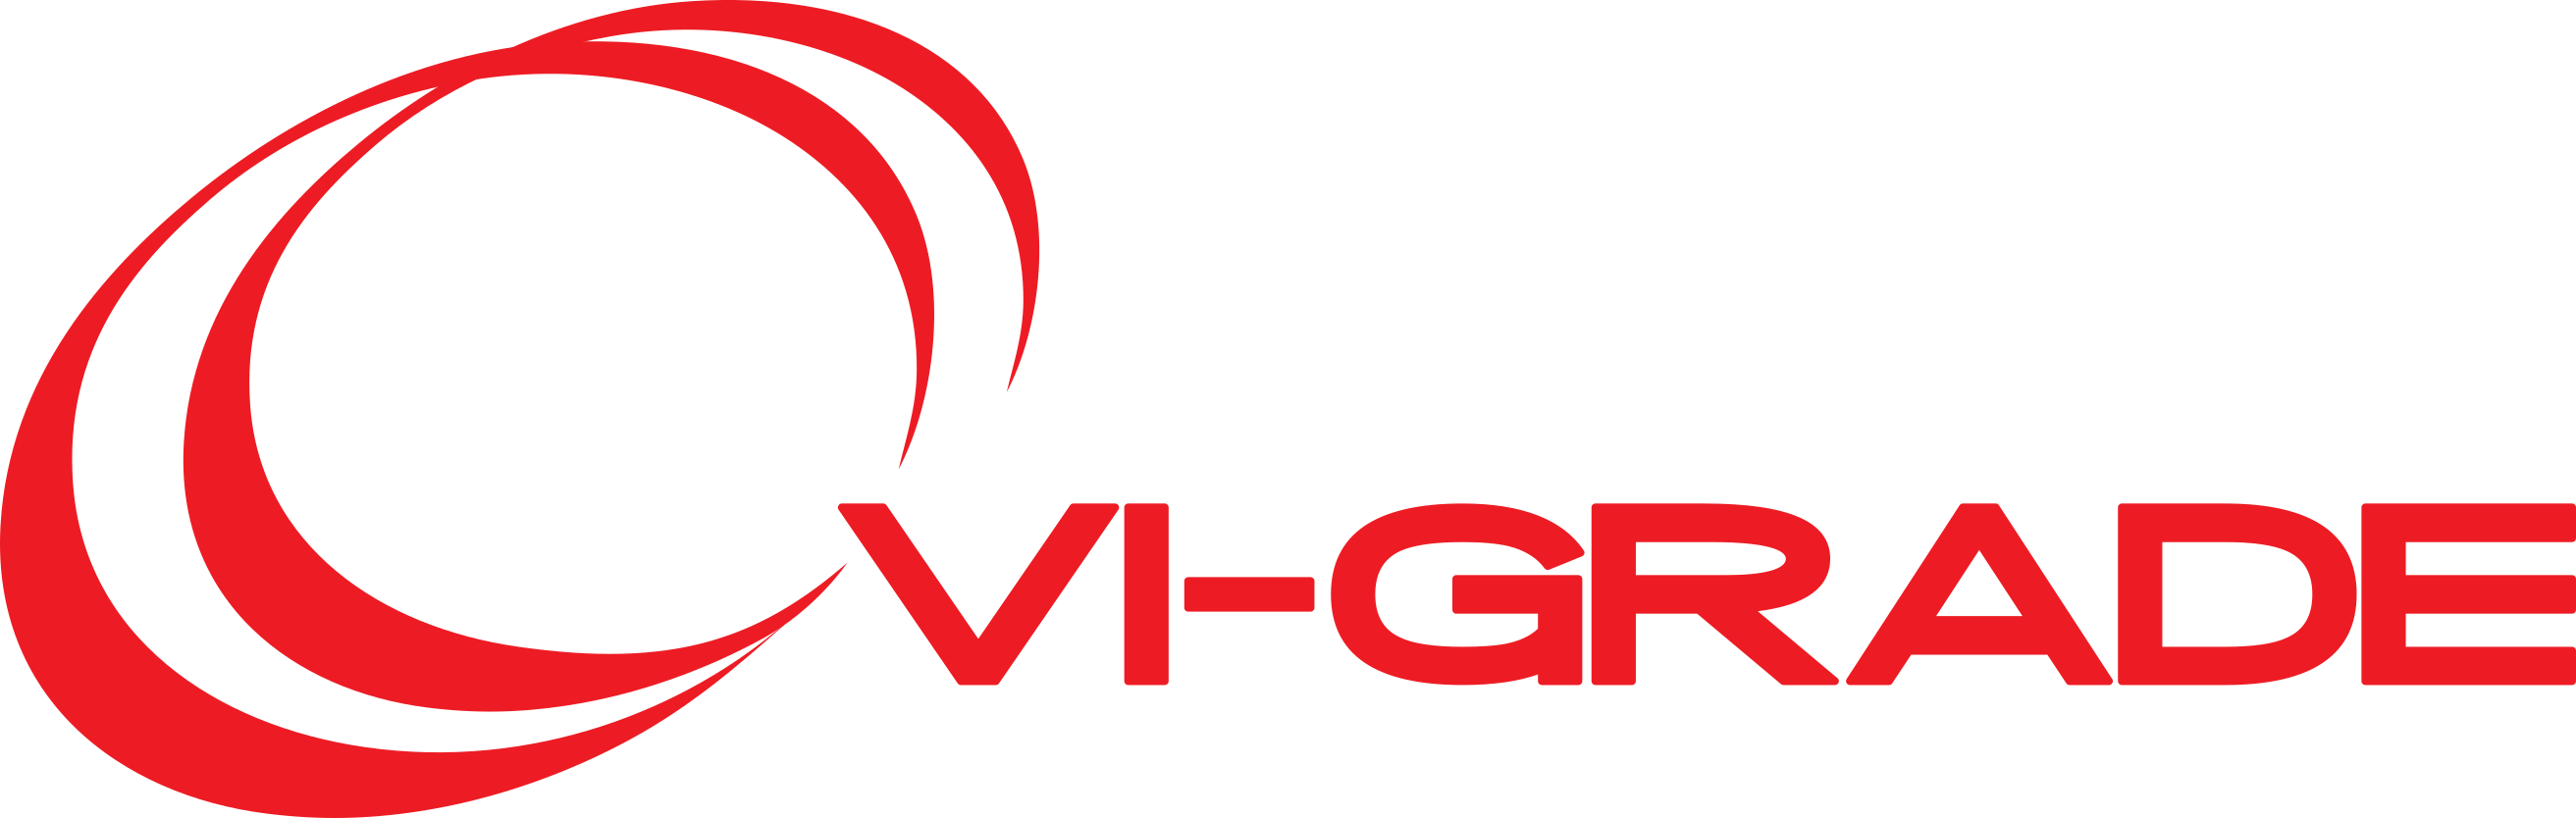 vi-grade_red